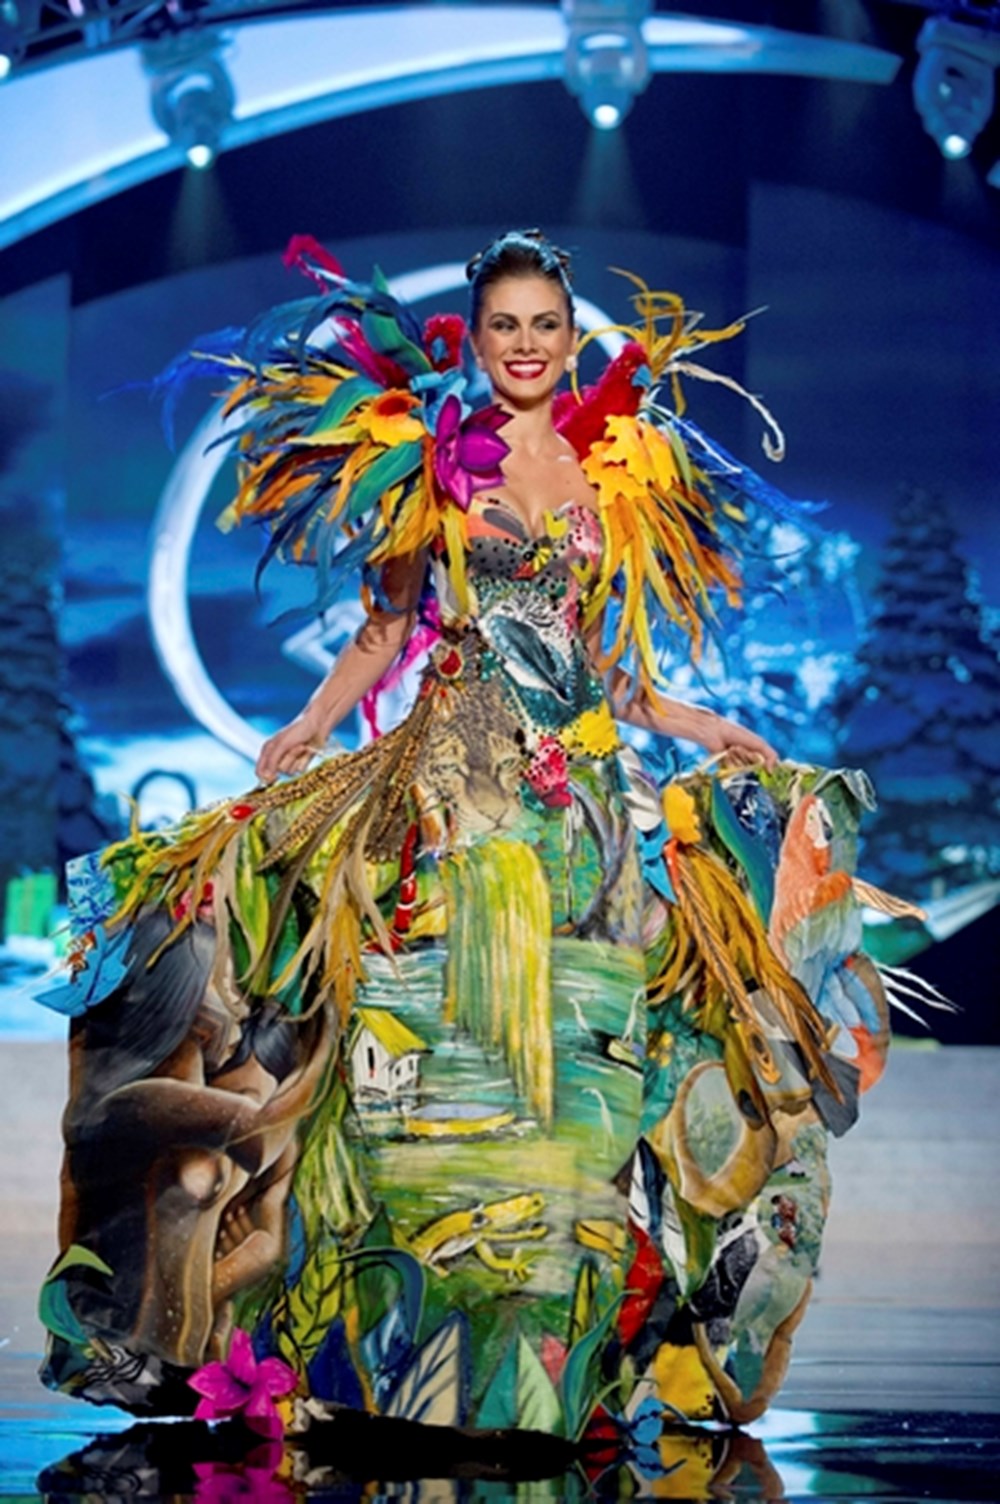 Образ для конкурса. Мисс Вселенная 2012 Габриэла Маркус. Костюм земли. Дефиле костюмов.